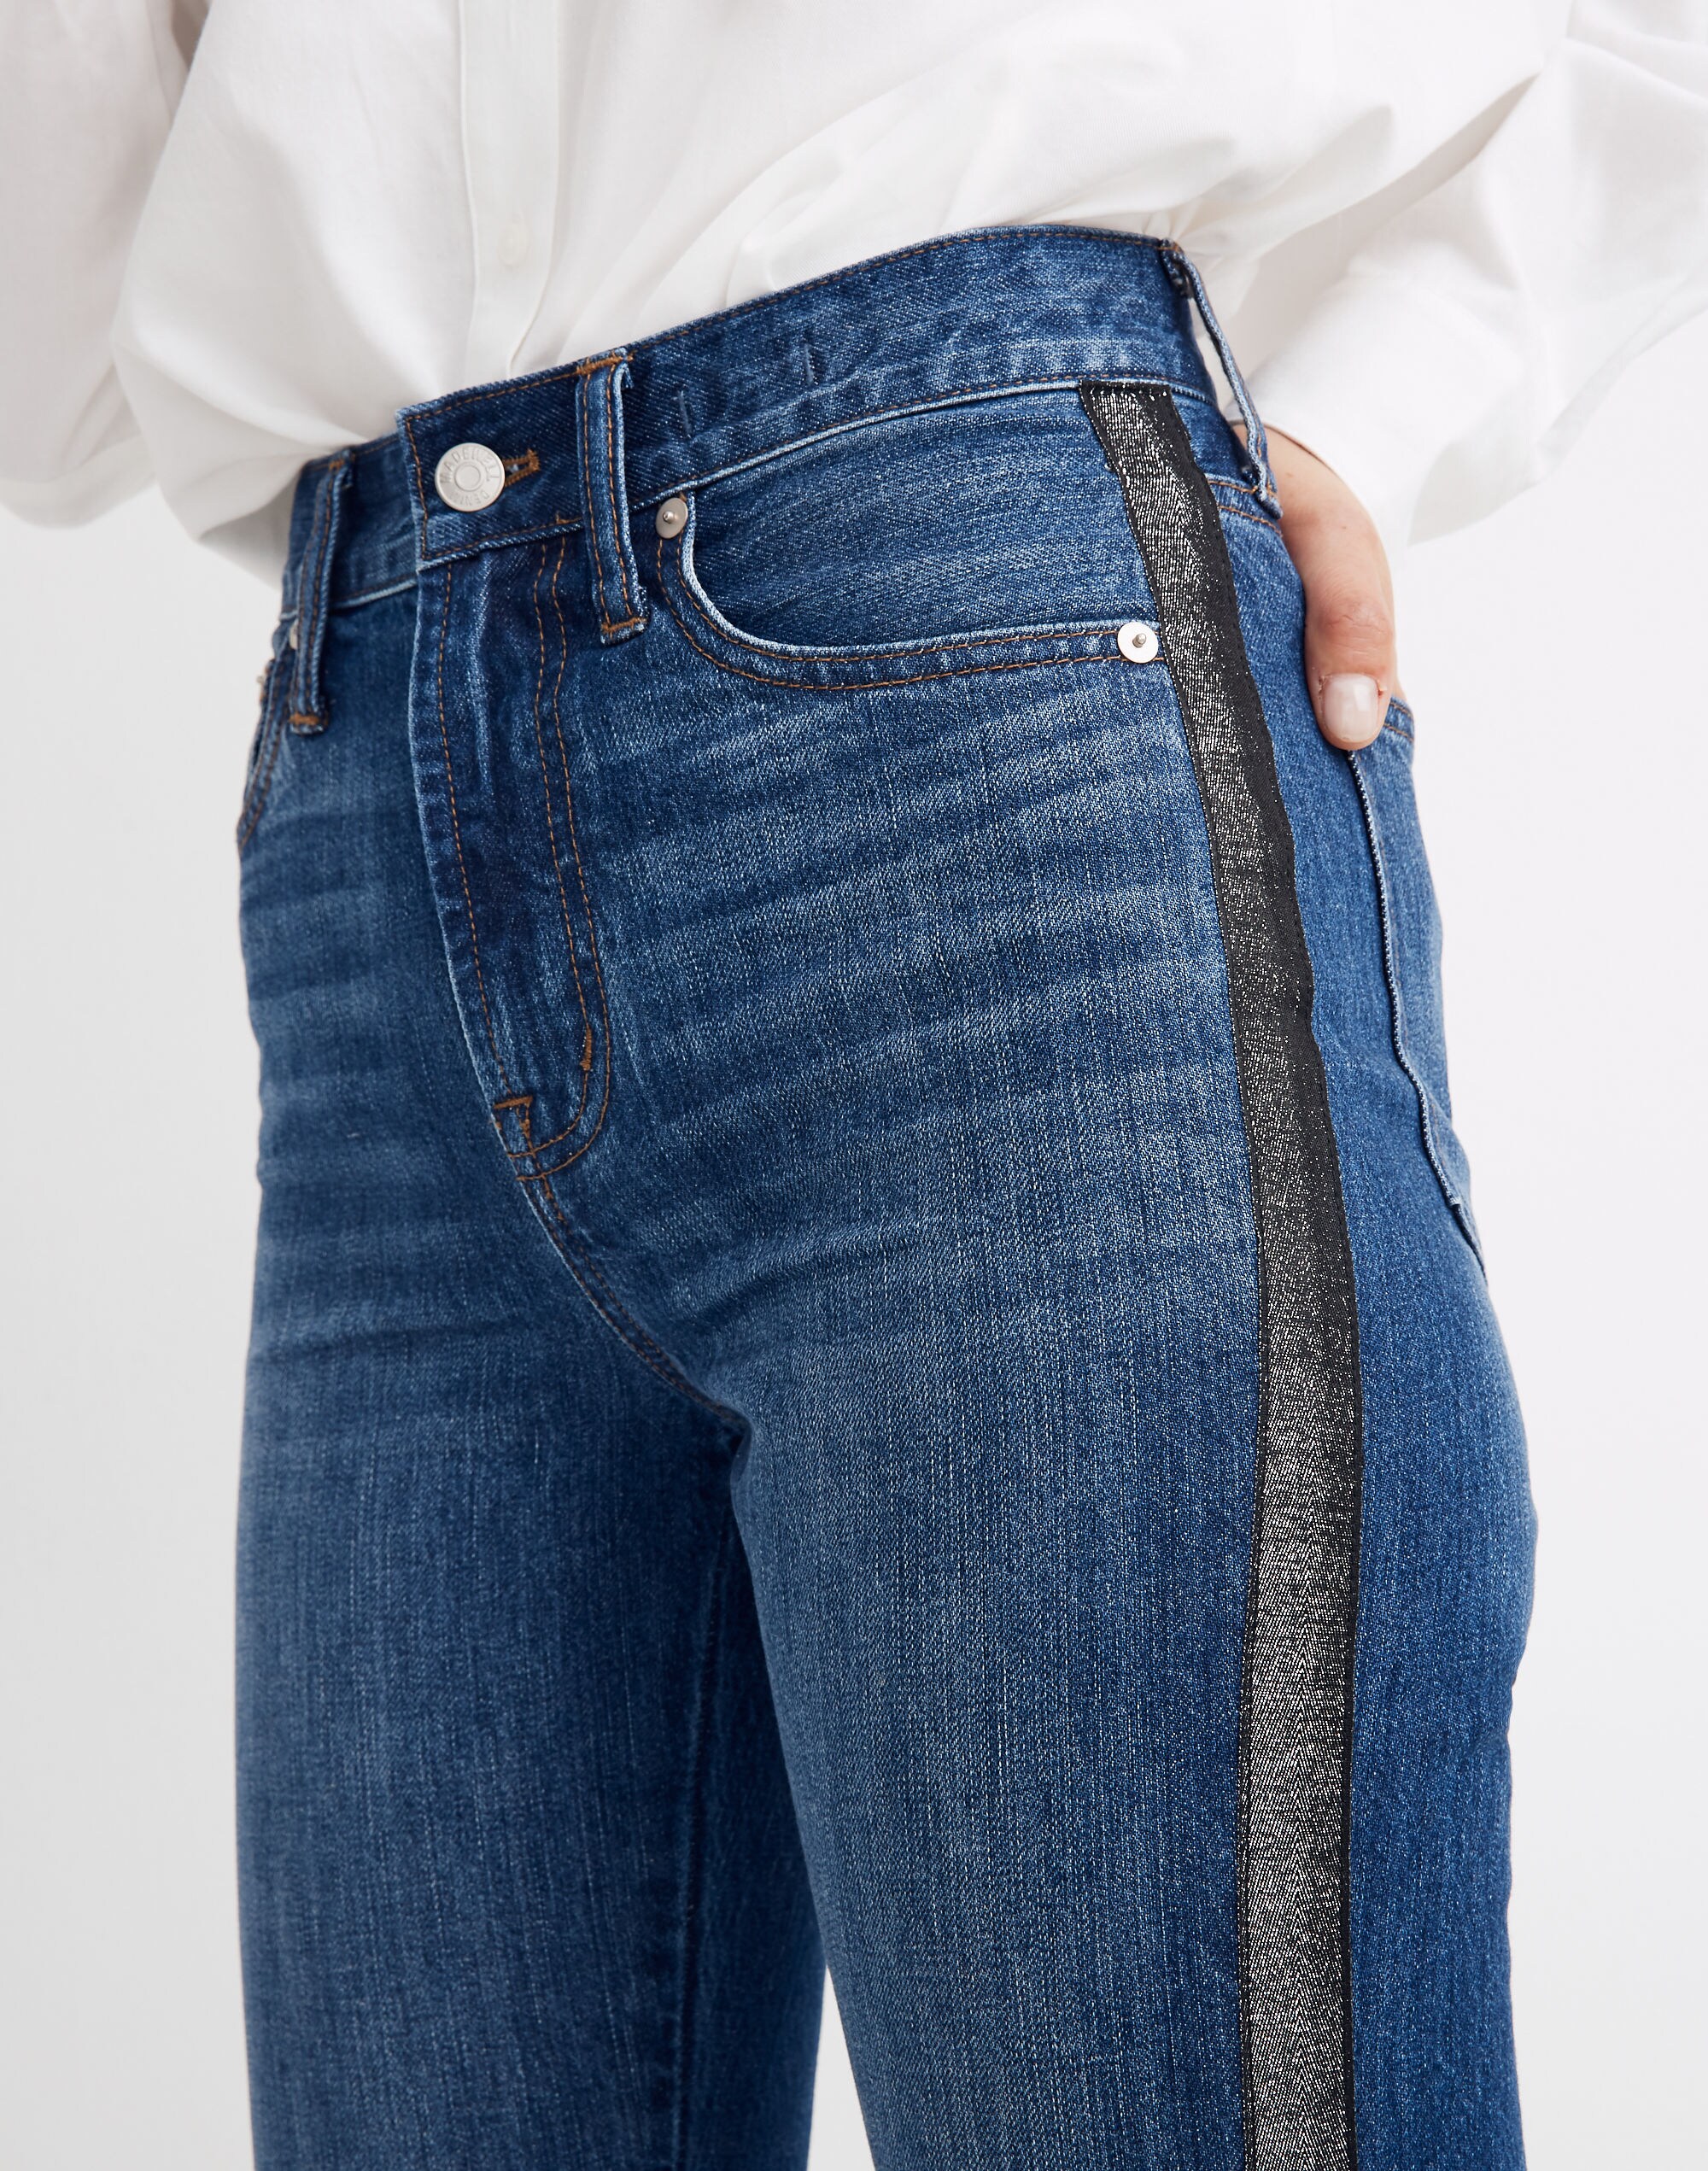 The Perfect Vintage Jean: Metallic Tuxedo Stripe Edition